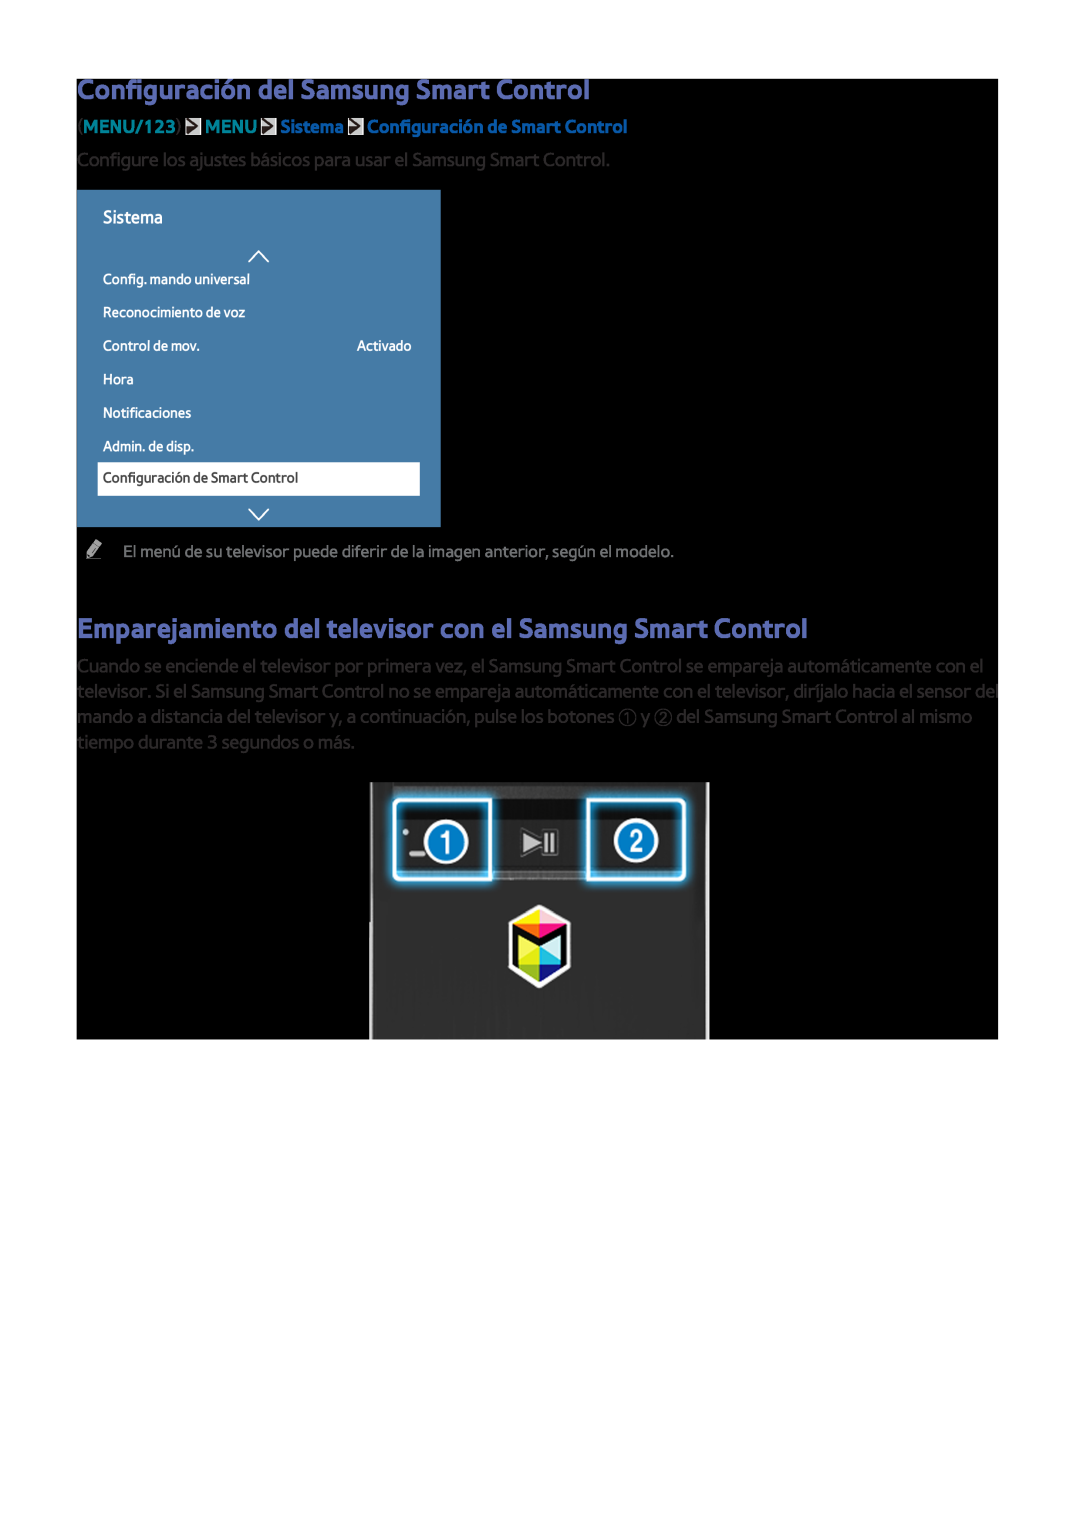 Samsung UE55JU6000KXXC Configuración del Samsung Smart Control, Emparejamiento del televisor con el Samsung Smart Control 